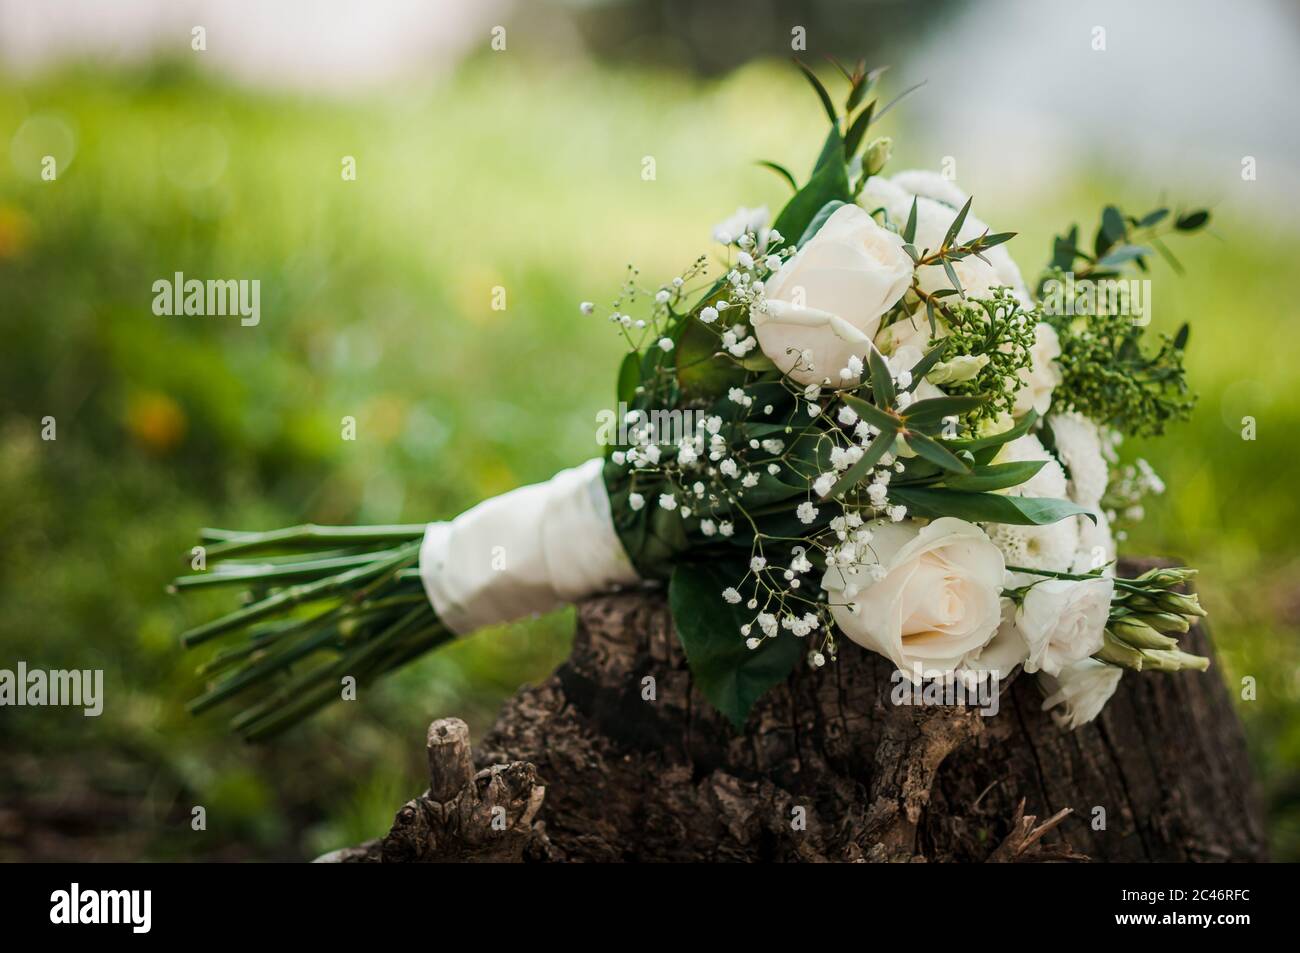 Il bouquet di rose bianche e foglie verdi, splendidamente decorato con  nastro di raso bianco, giace sull'erba in una giornata estiva. Tema di  nozze Foto stock - Alamy